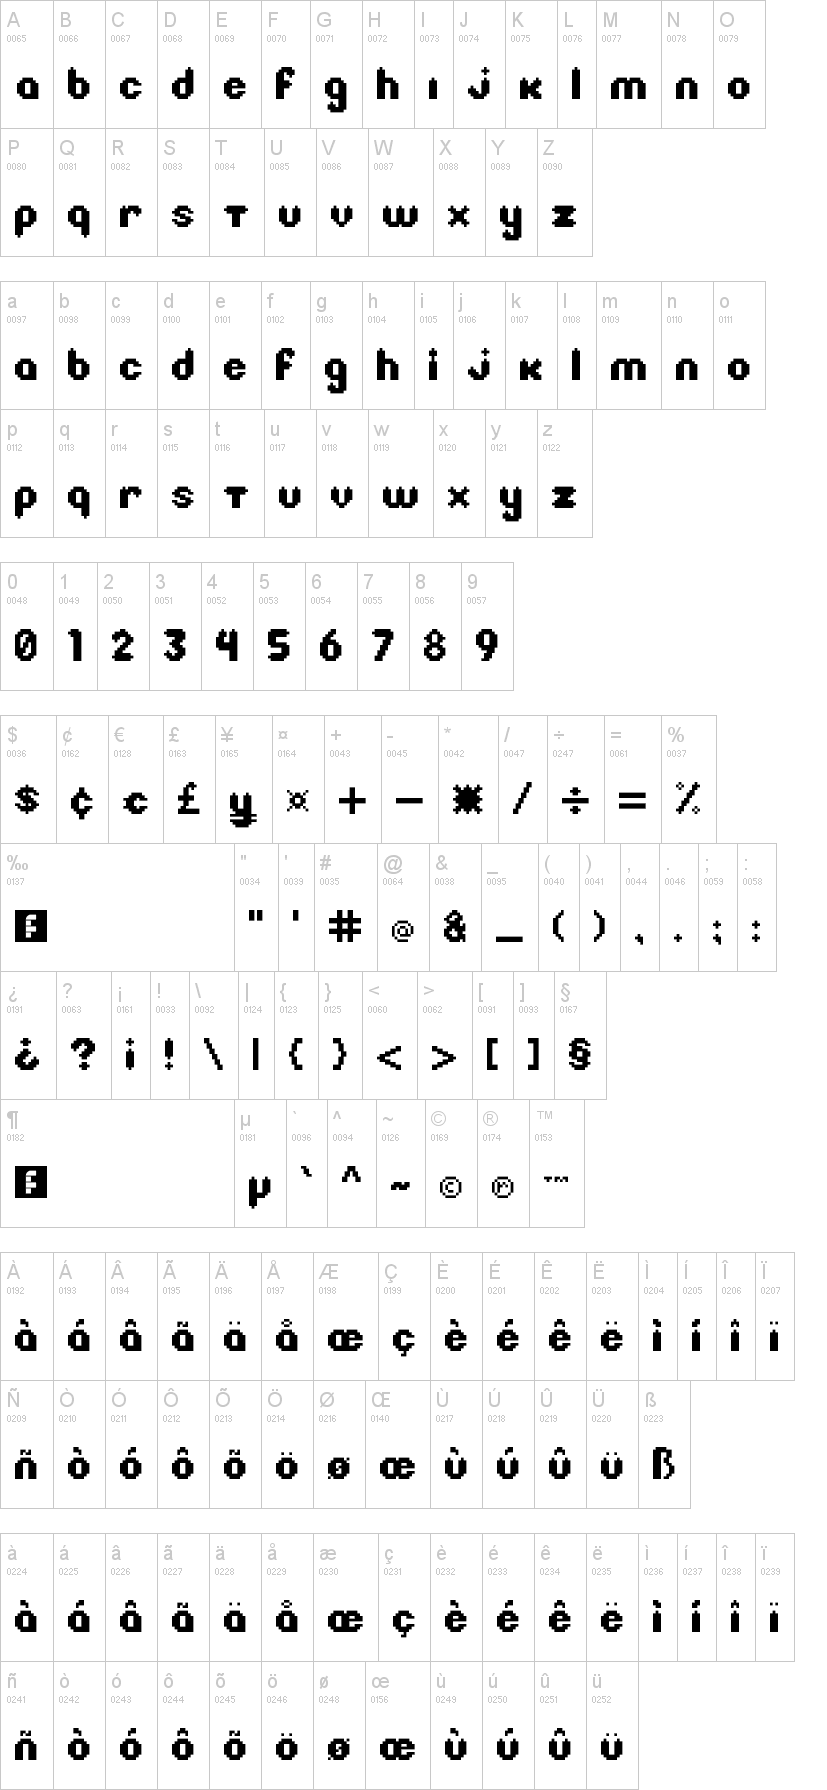 Litebulb 8 Bit Font Dafontcom.